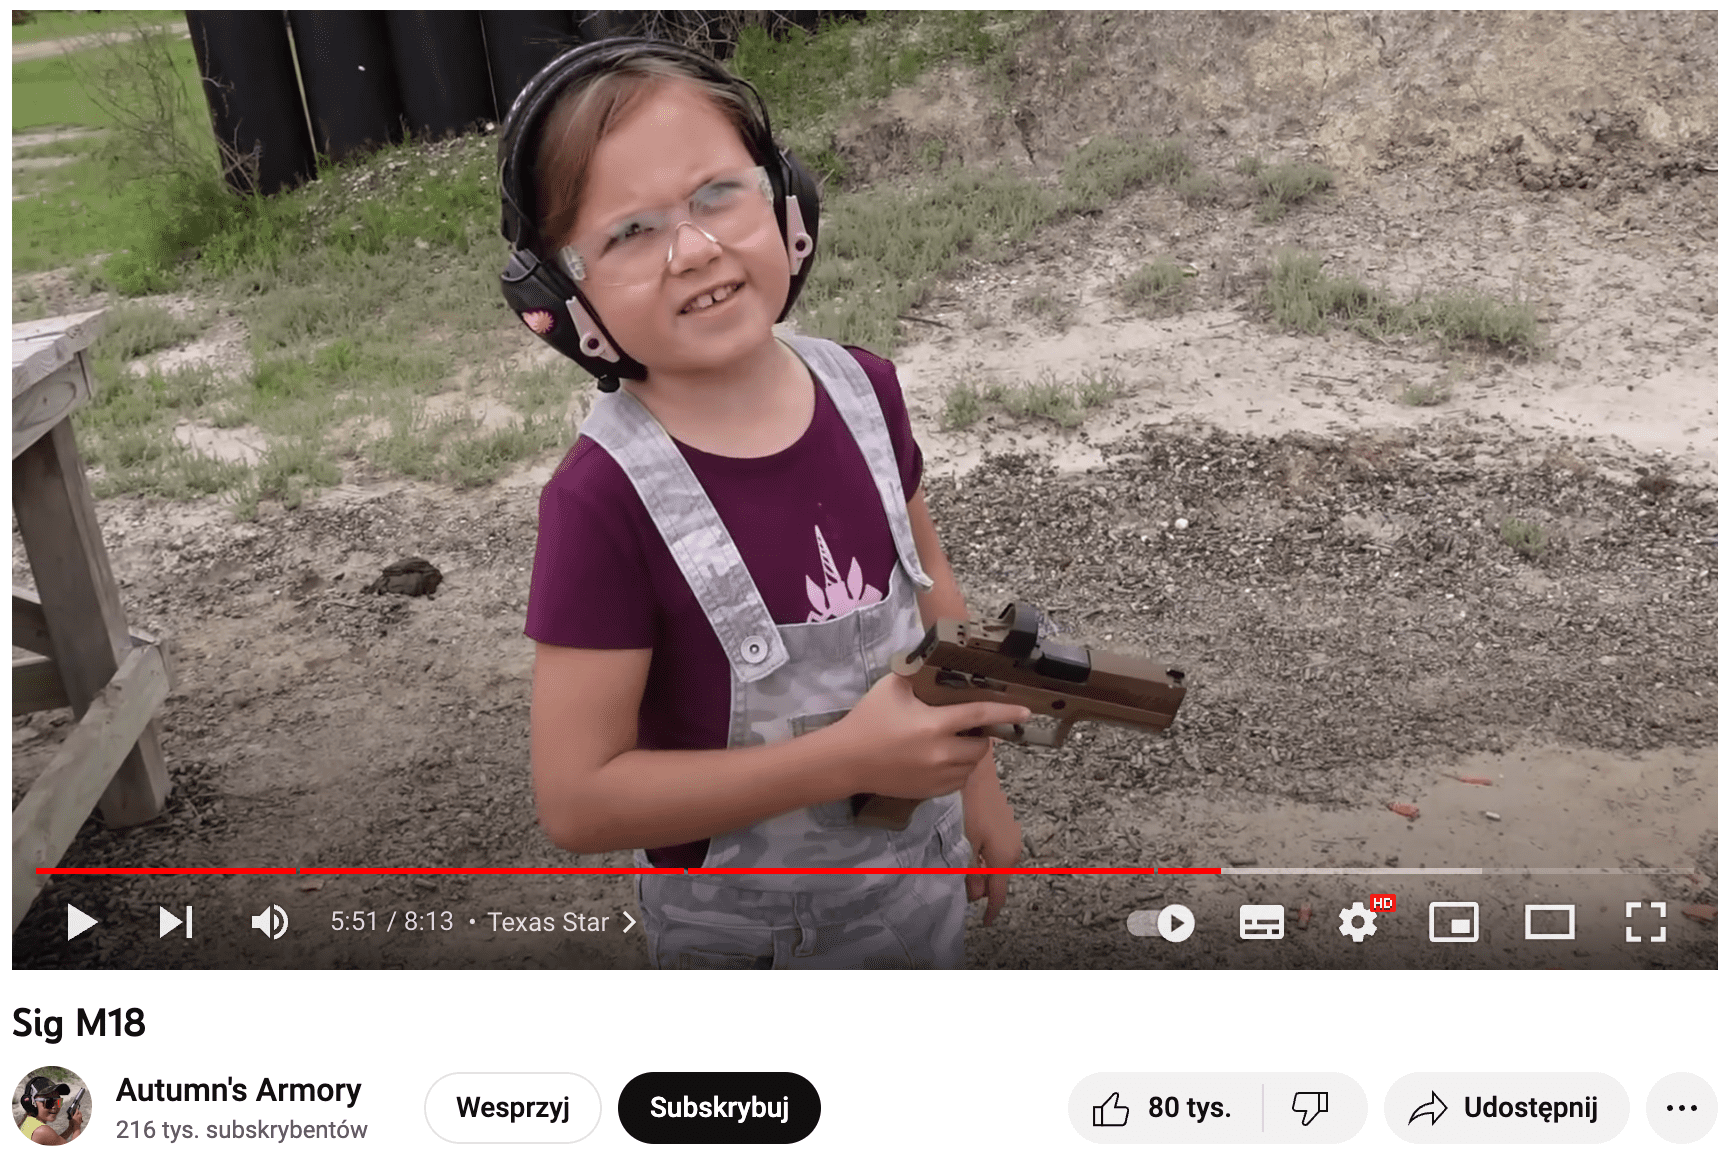 Zrzut ekranu filmu na YouTubie. Widoczna jest kilkuletnia dziewczynka trzymająca w dłoni pistolet.